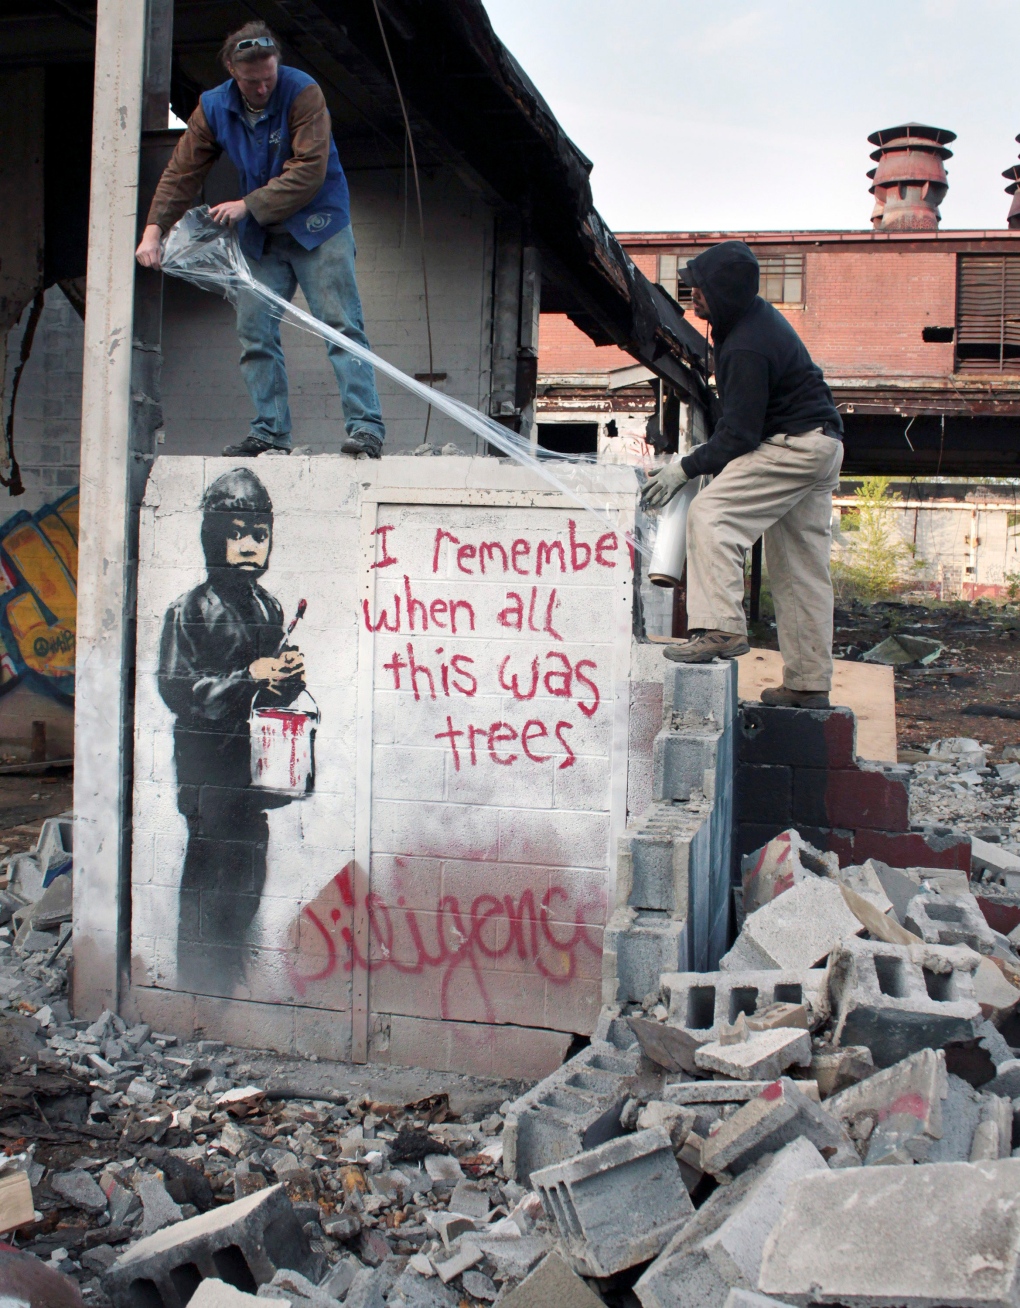 Banksy art in Detroit